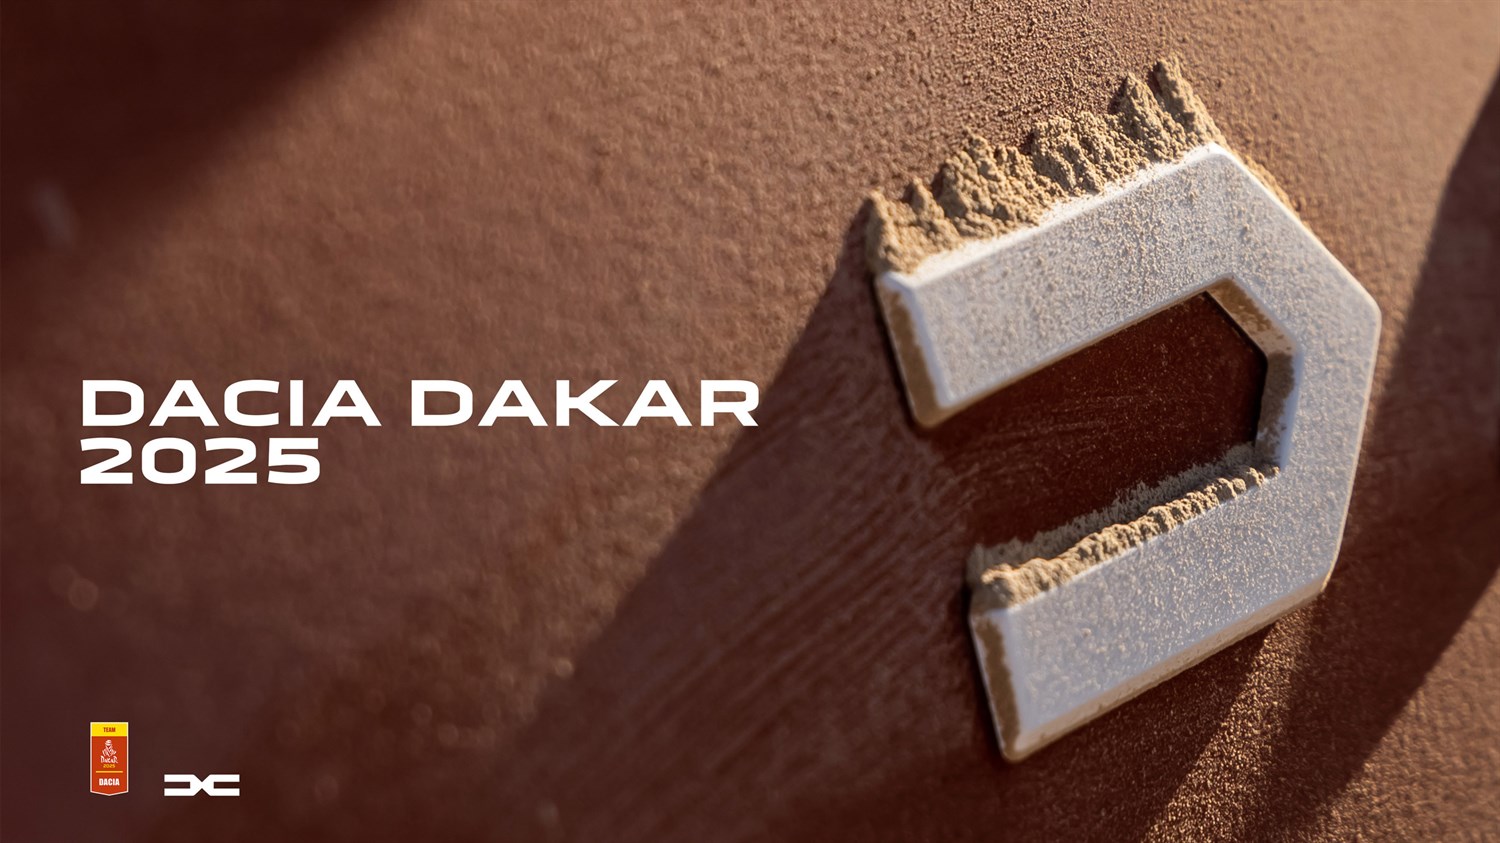 Dacia Dakar logo